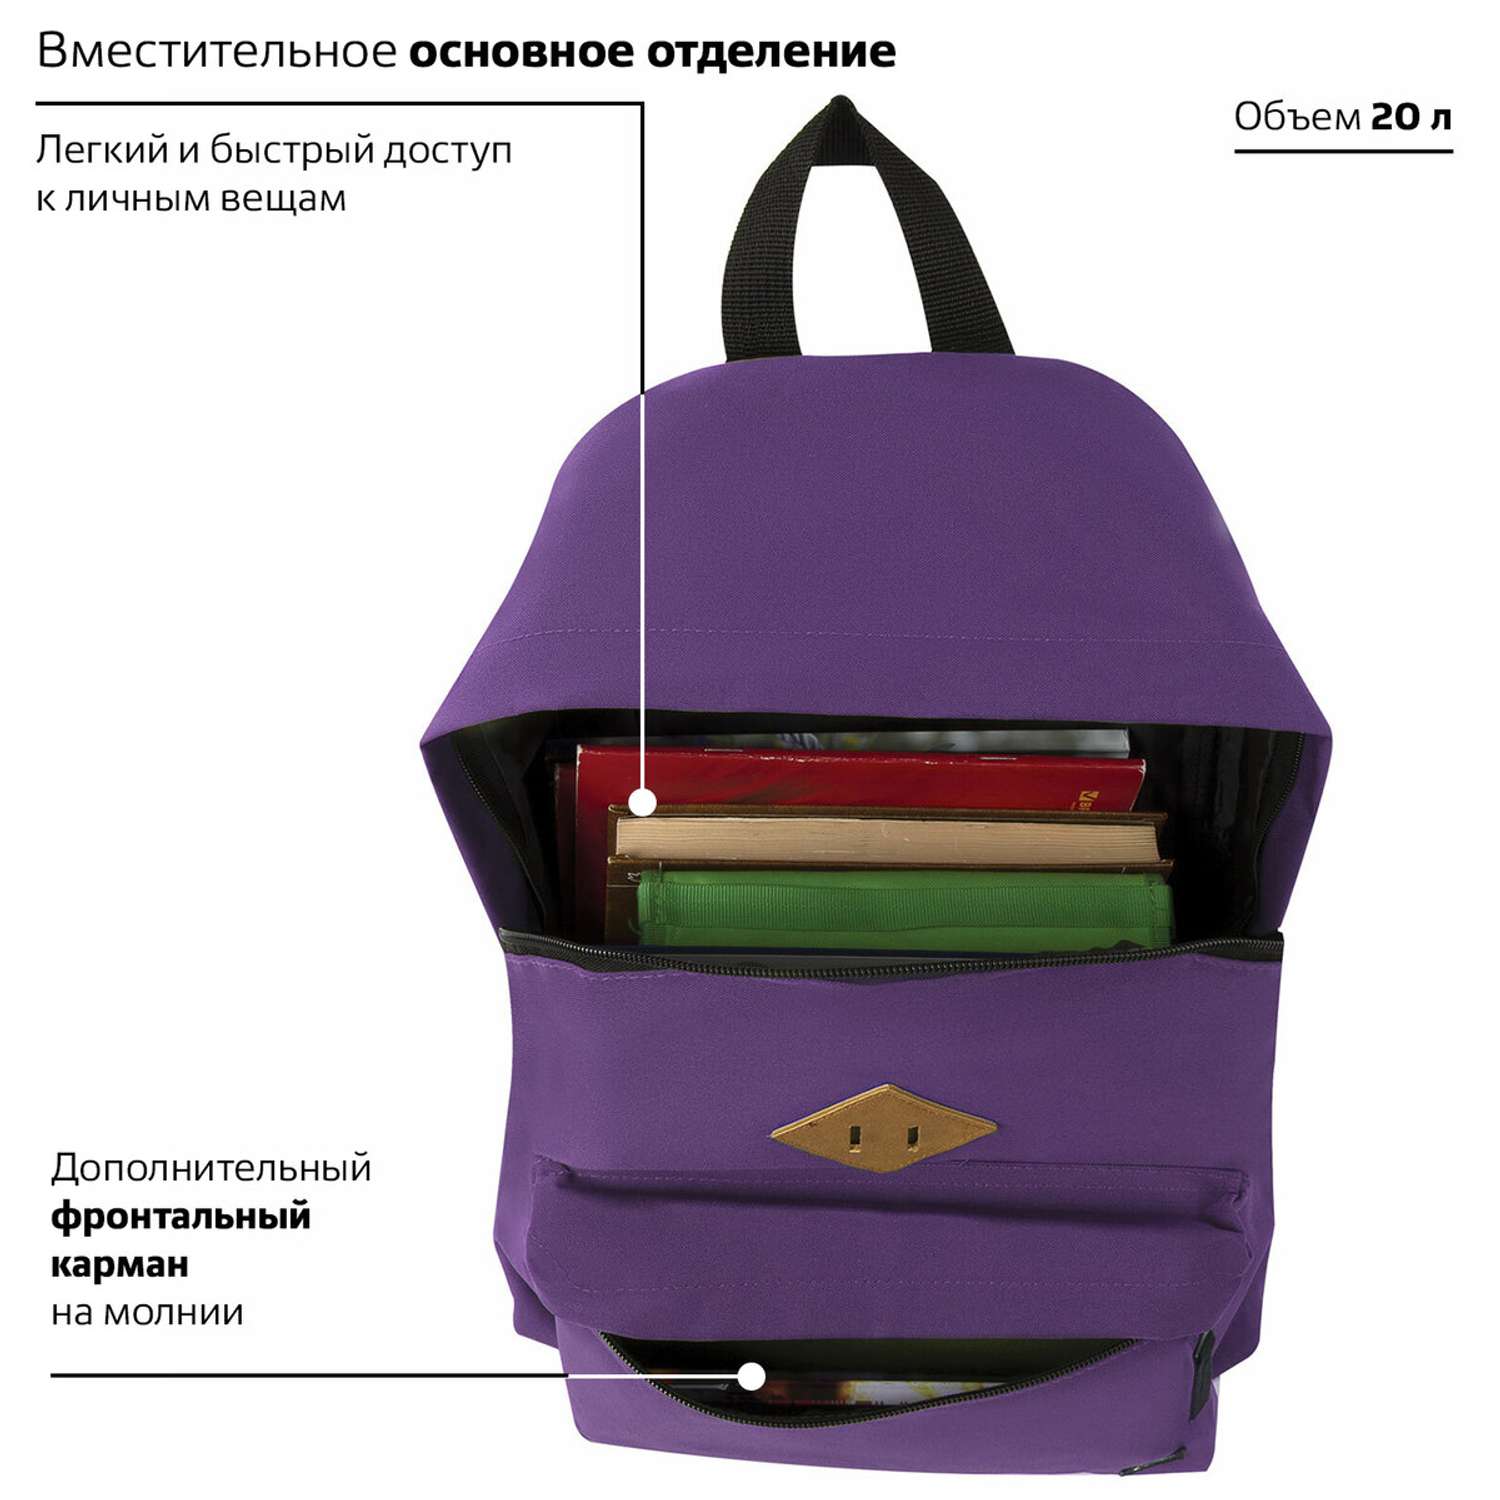 Рюкзак Brauberg Универсальный сити-формат один тон фиолетовый - фото 5